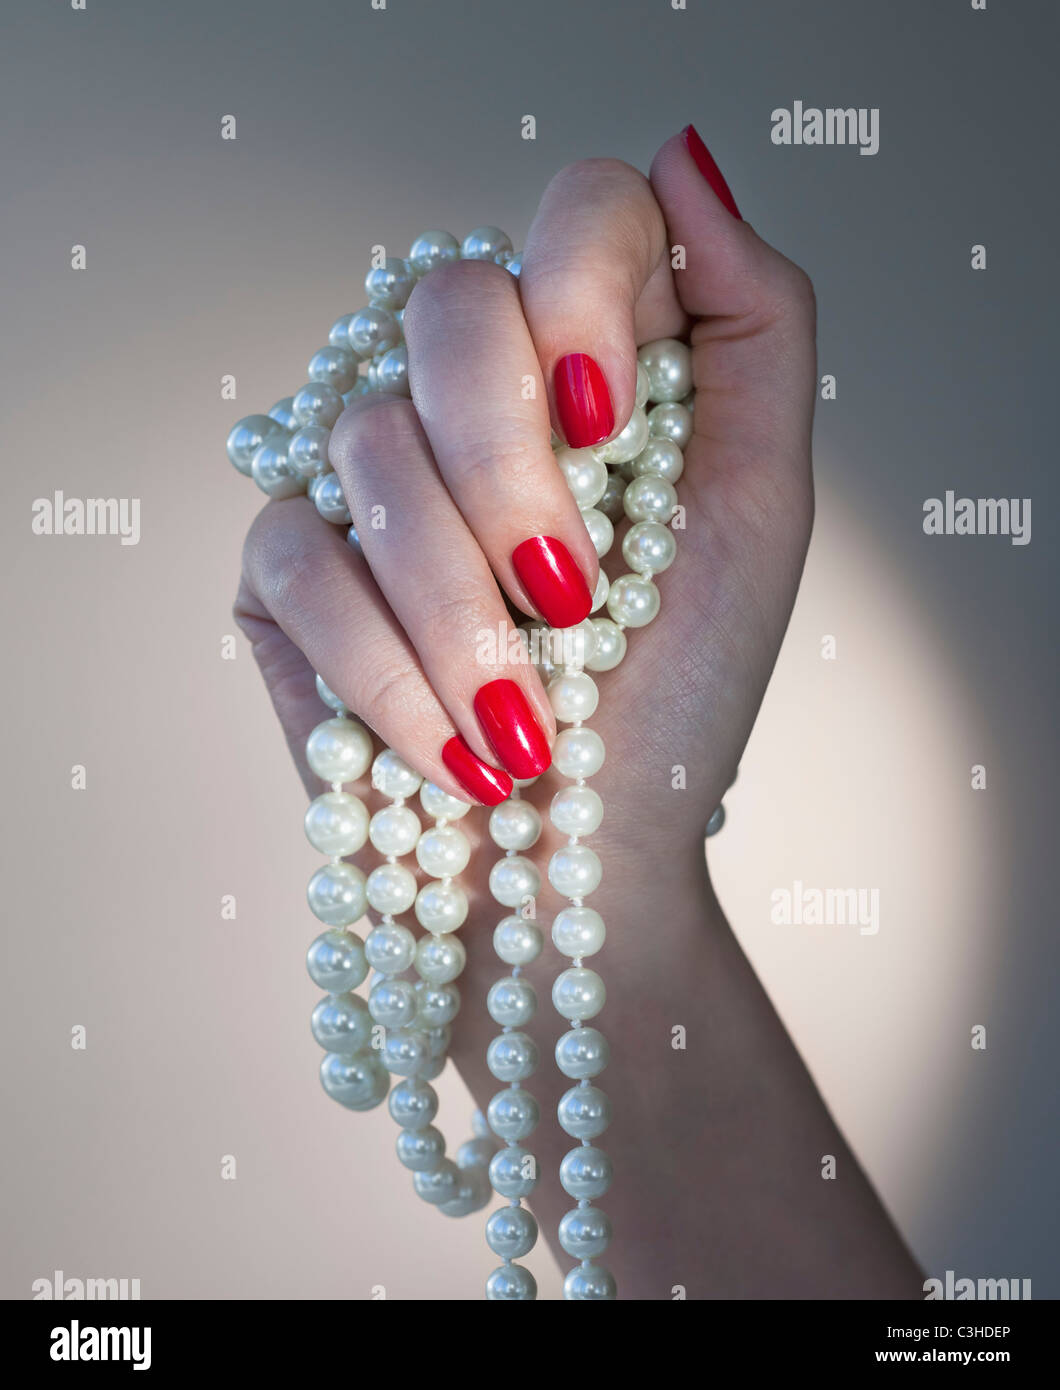 Nahaufnahme von Frauenhand mit rotem Nagellack hält Perlen Stockfotografie  - Alamy